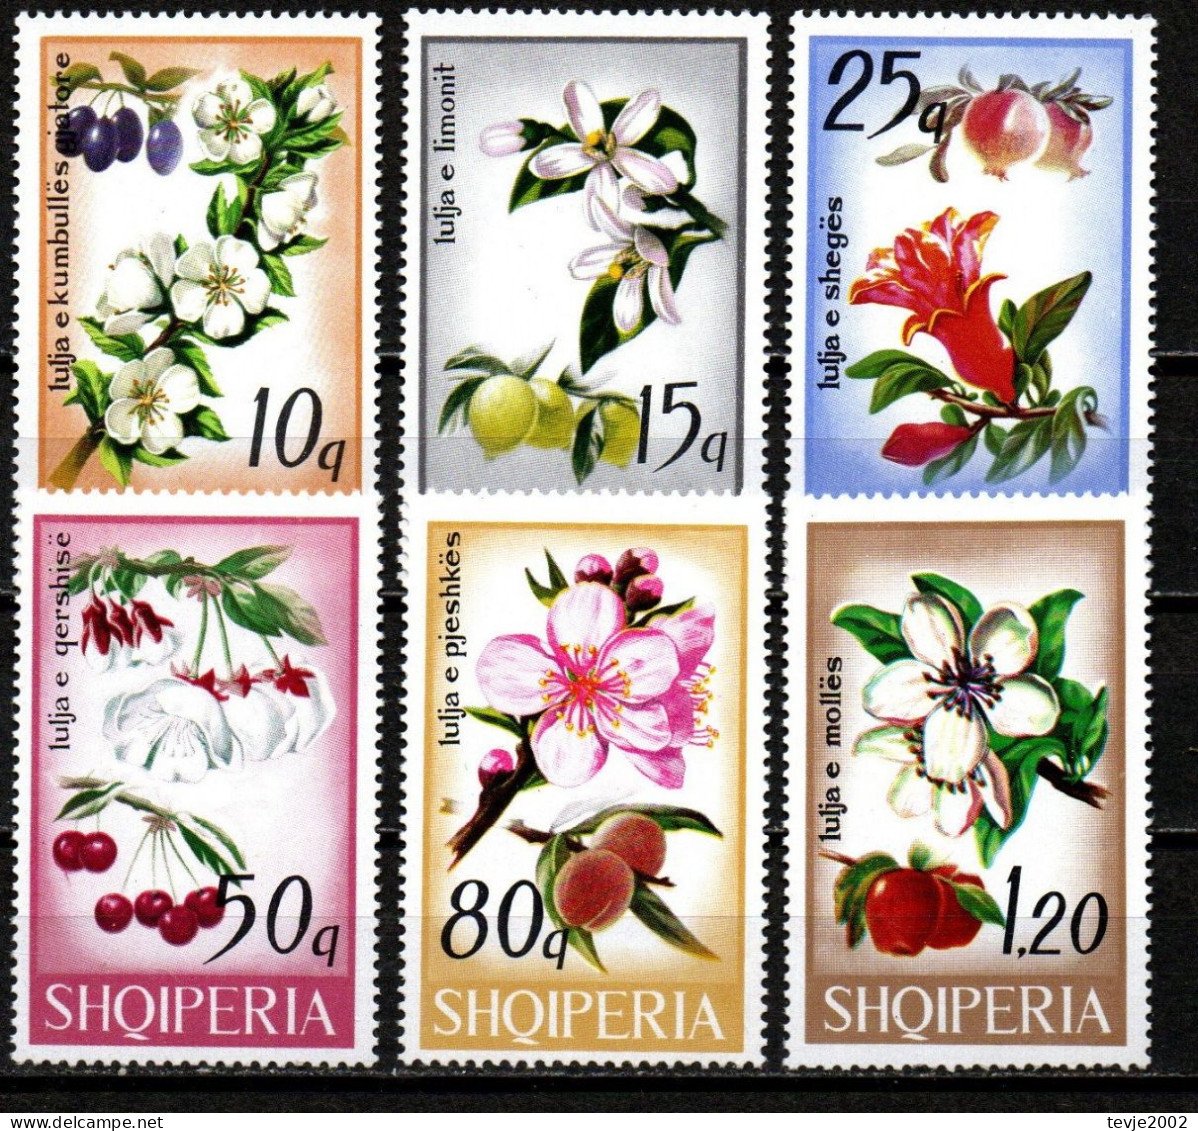 Albanien 1969 - Mi.Nr. 1362 - 1367 - Postfrisch MNH - Pflanzen Plants Obst Fruits - Frutas